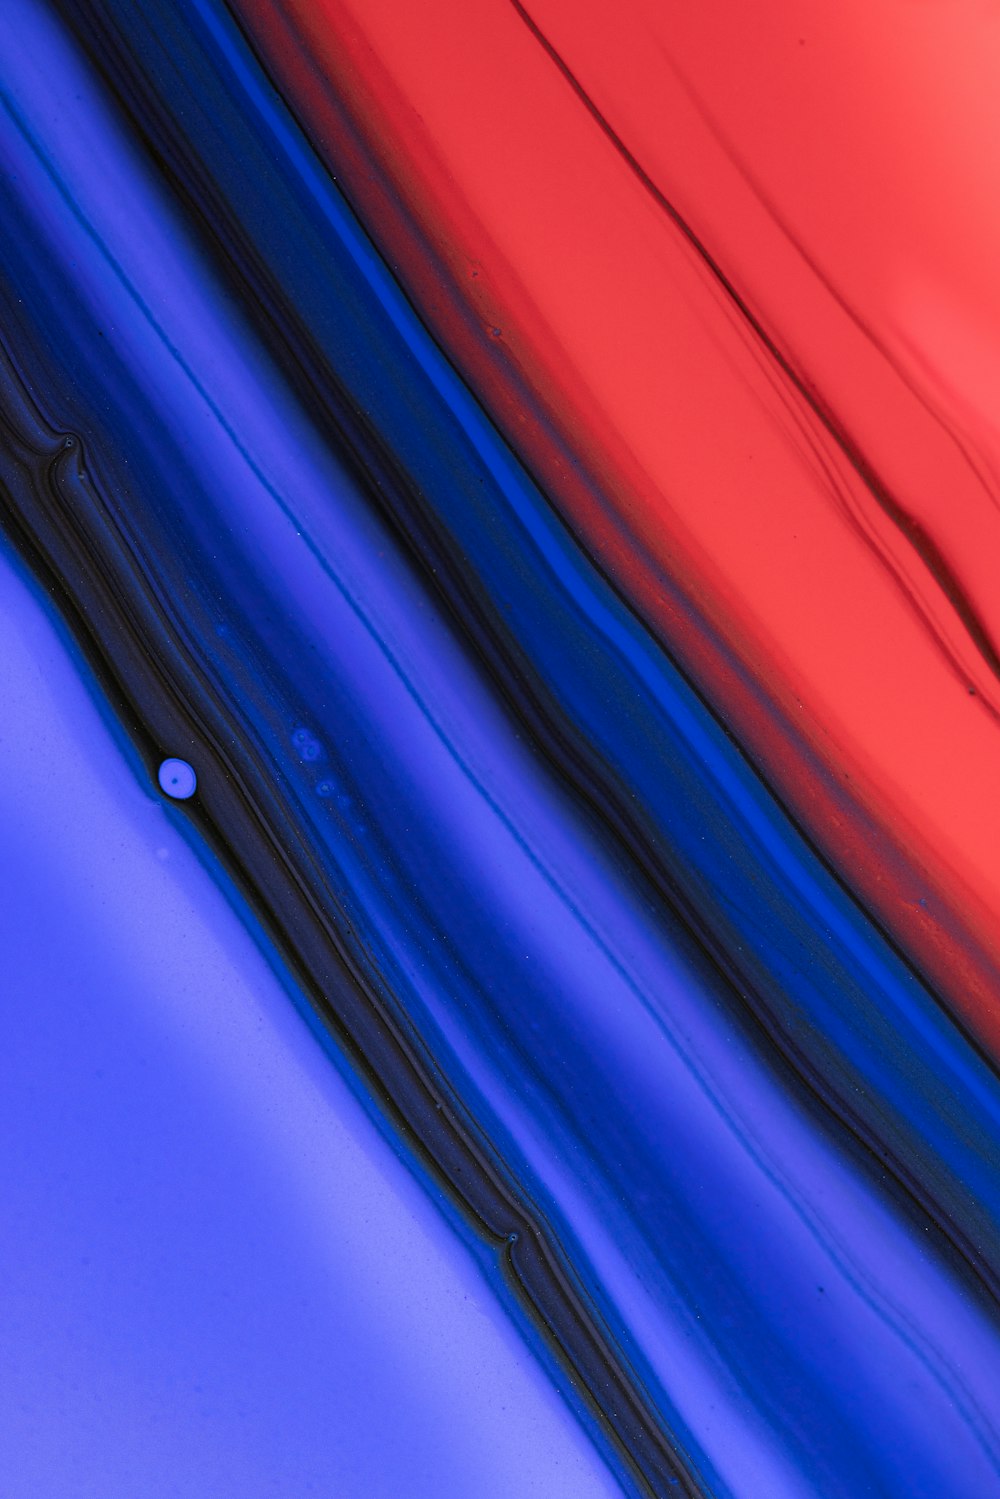 um close up de um objeto vermelho, azul e preto